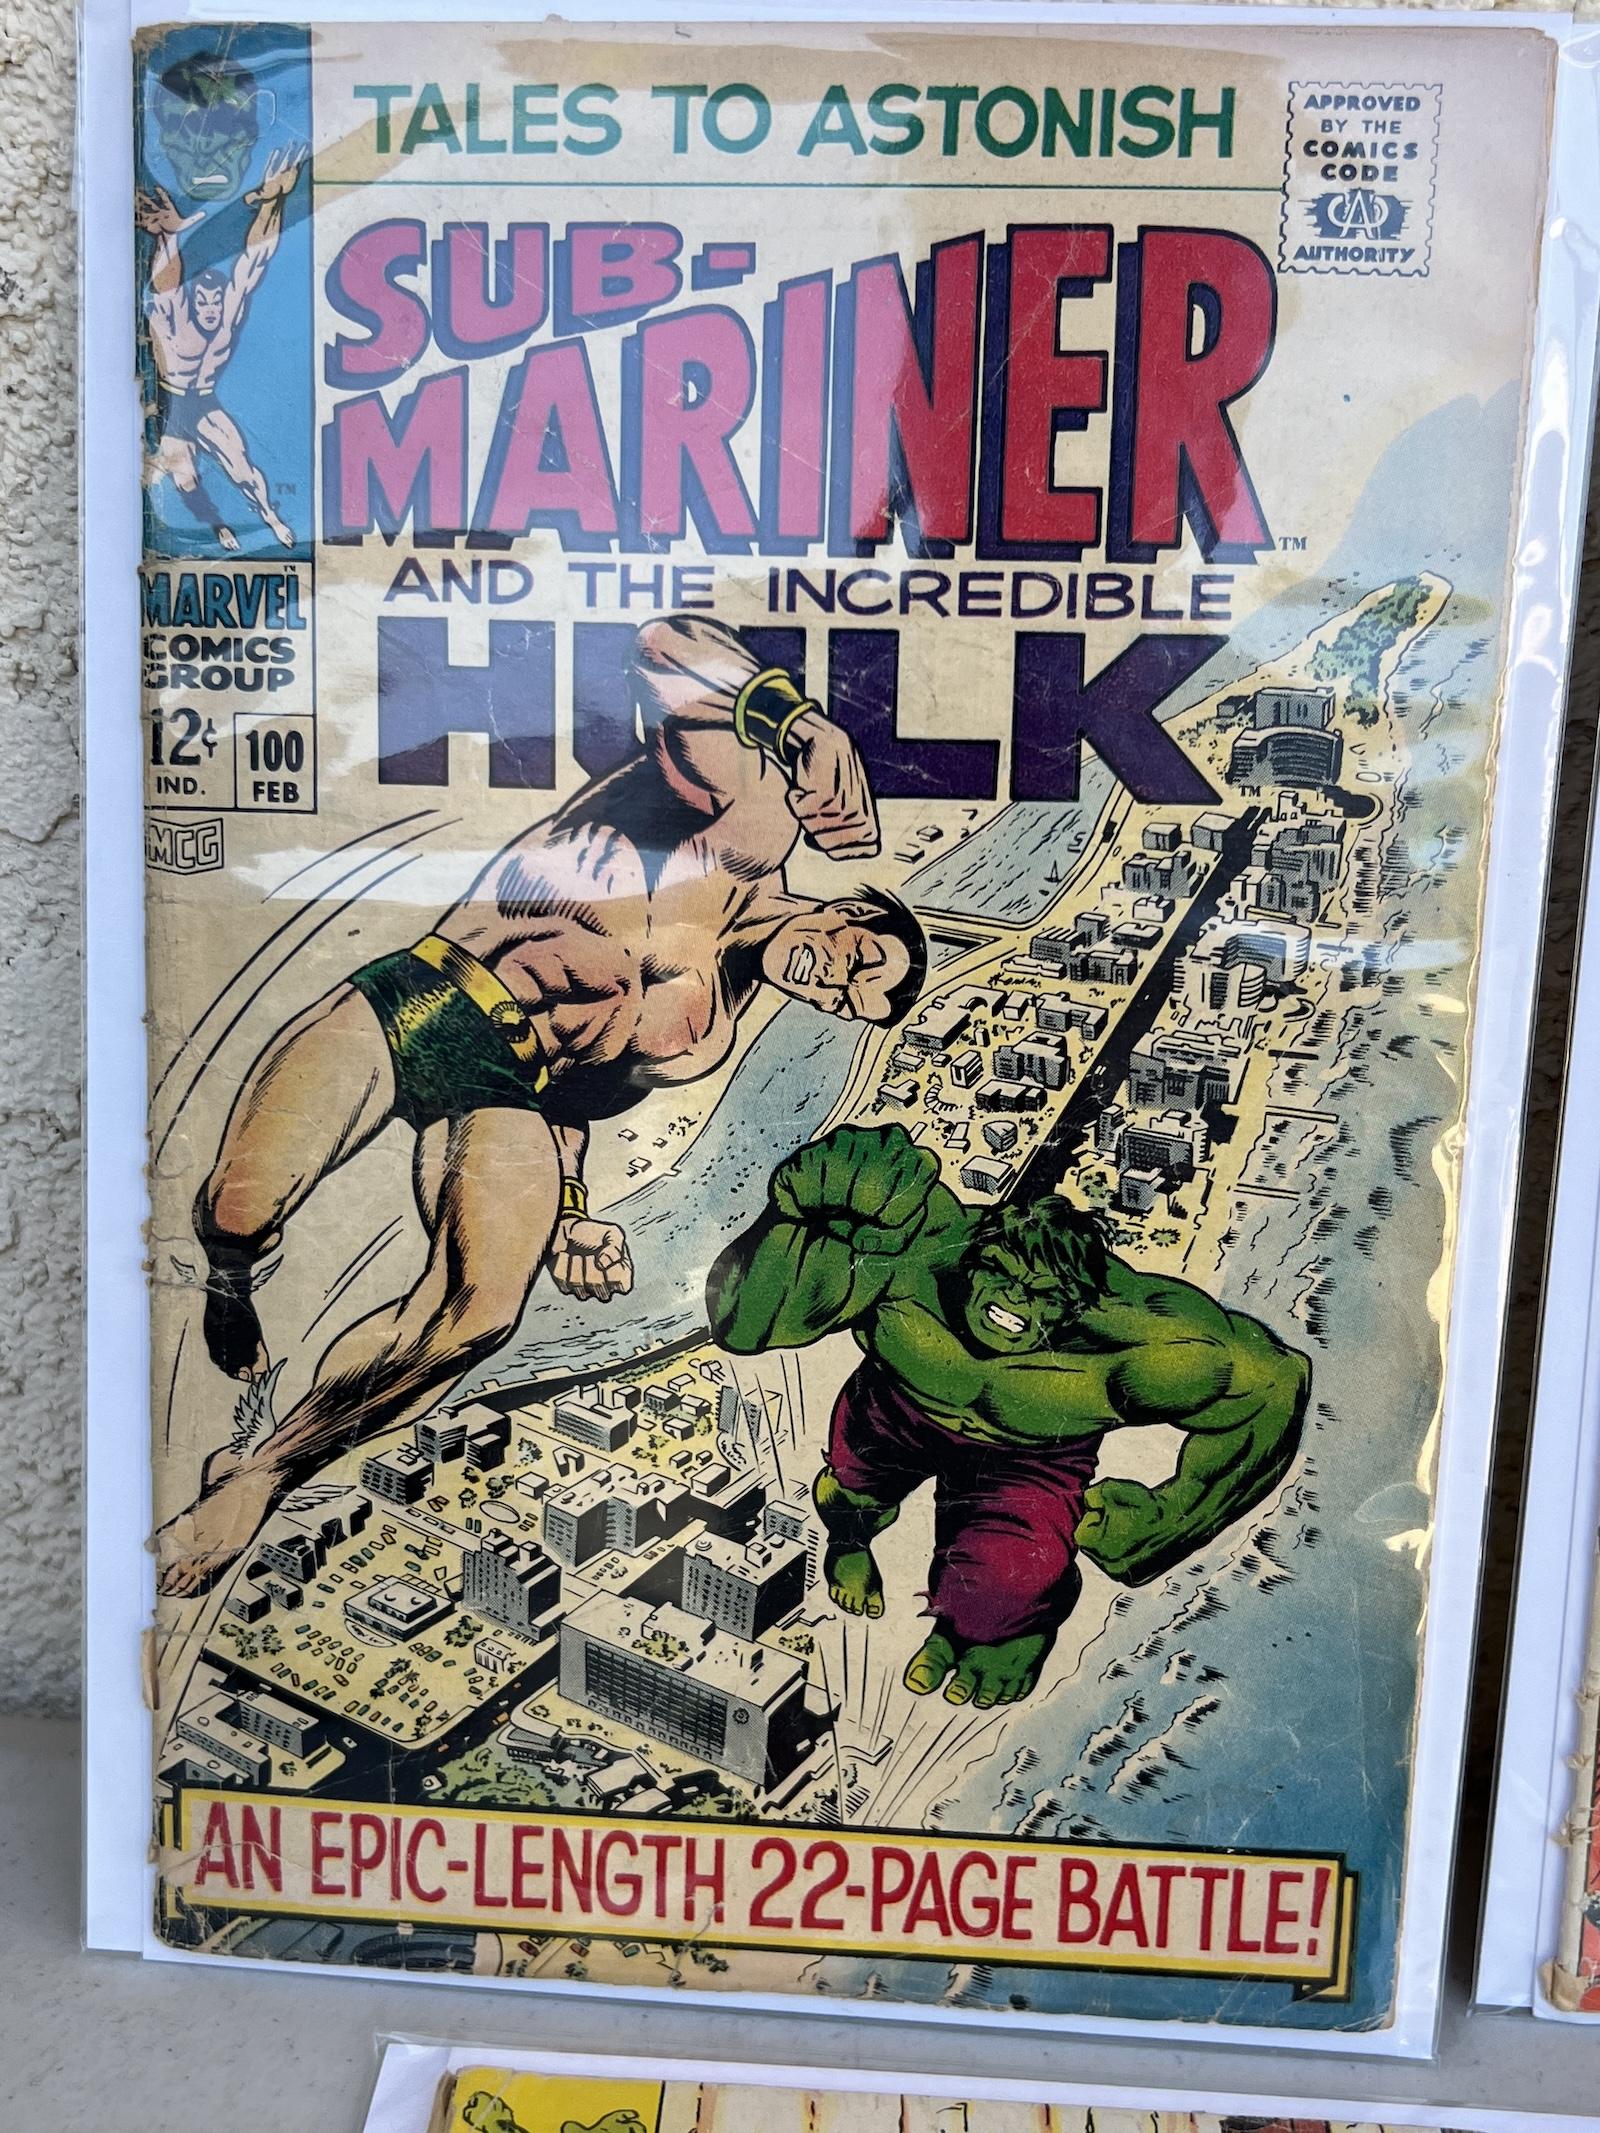 COMIC BOOK Incredible Hulk 109, 98, 99, 108 100 MARVEL 12 c